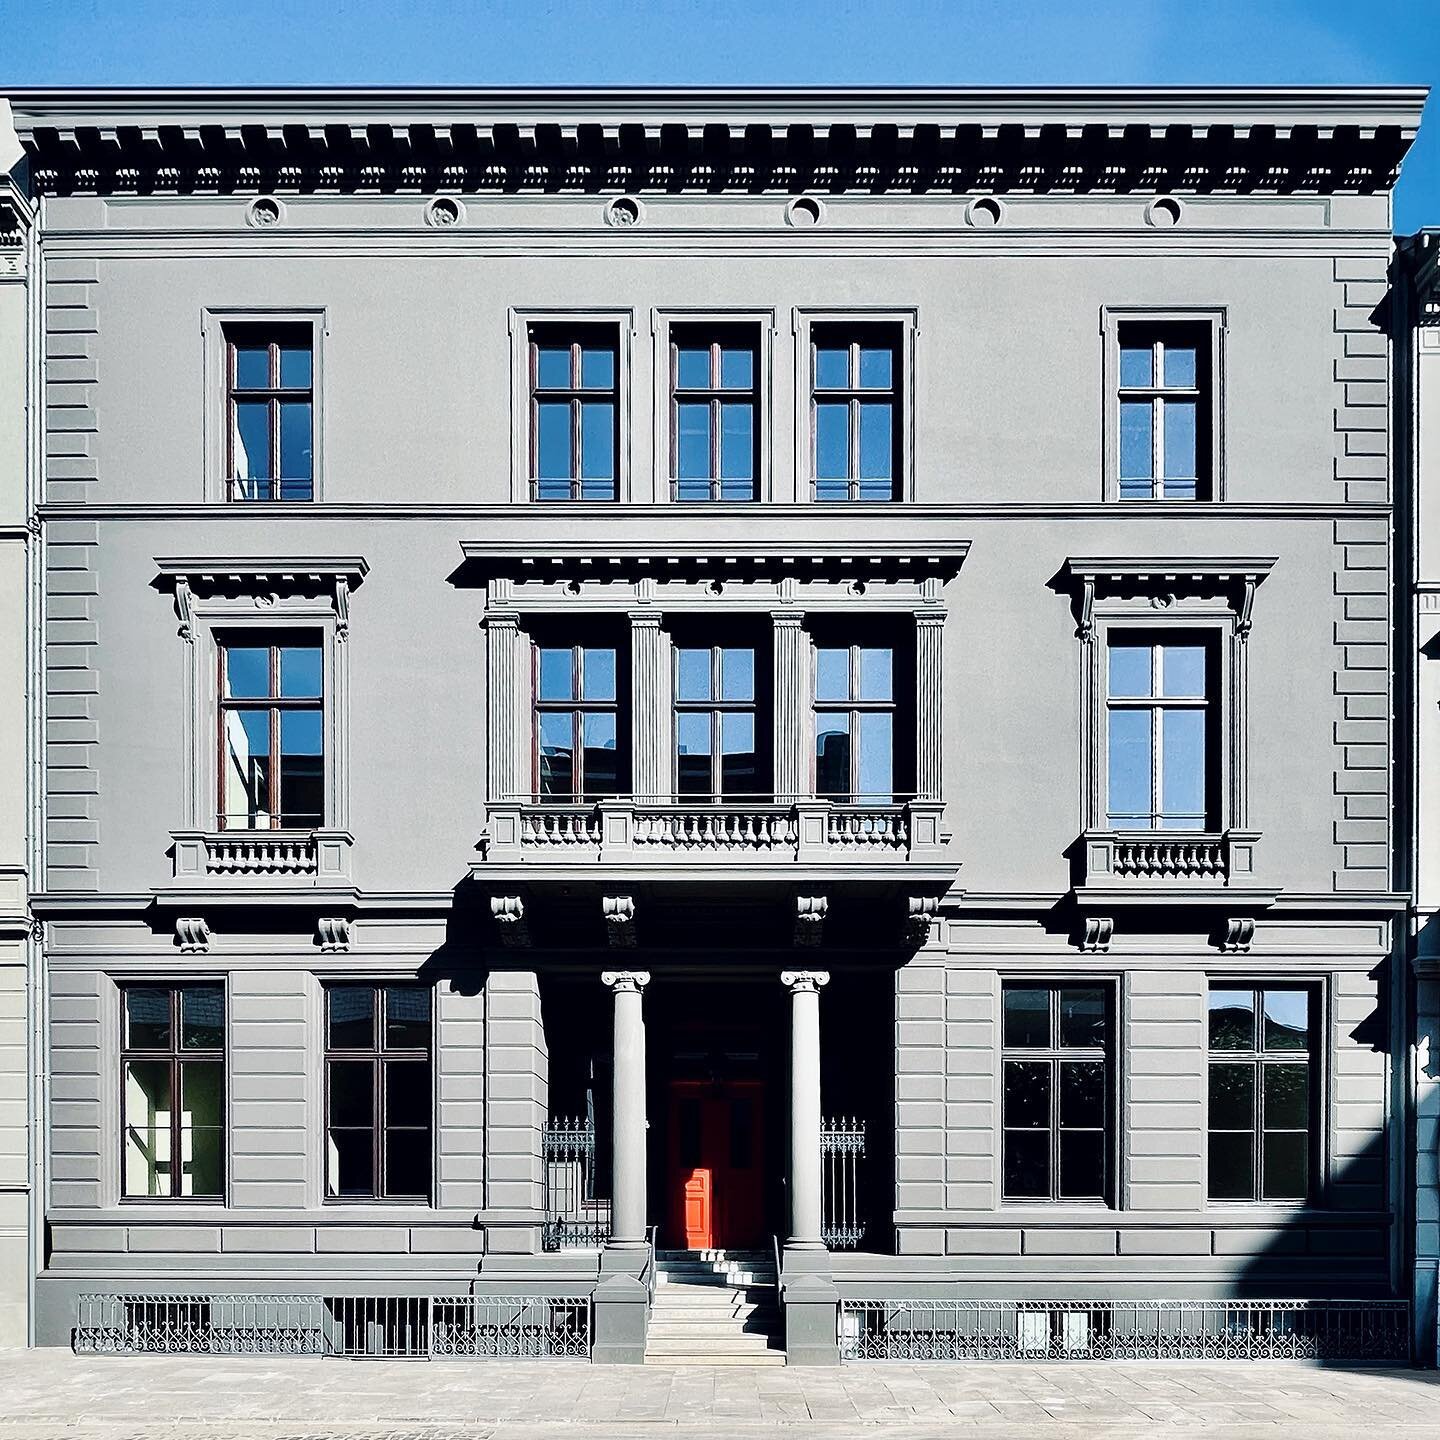 Projektleiter im StudioJK f&uuml;r THE NEW INSTITUTE in Hamburg.

#TheNewInstitute #StudioJK #MartinHaller #HupeFlatauPartner #InteriorArchitecture #Innenarchitektur #FlorianRieser